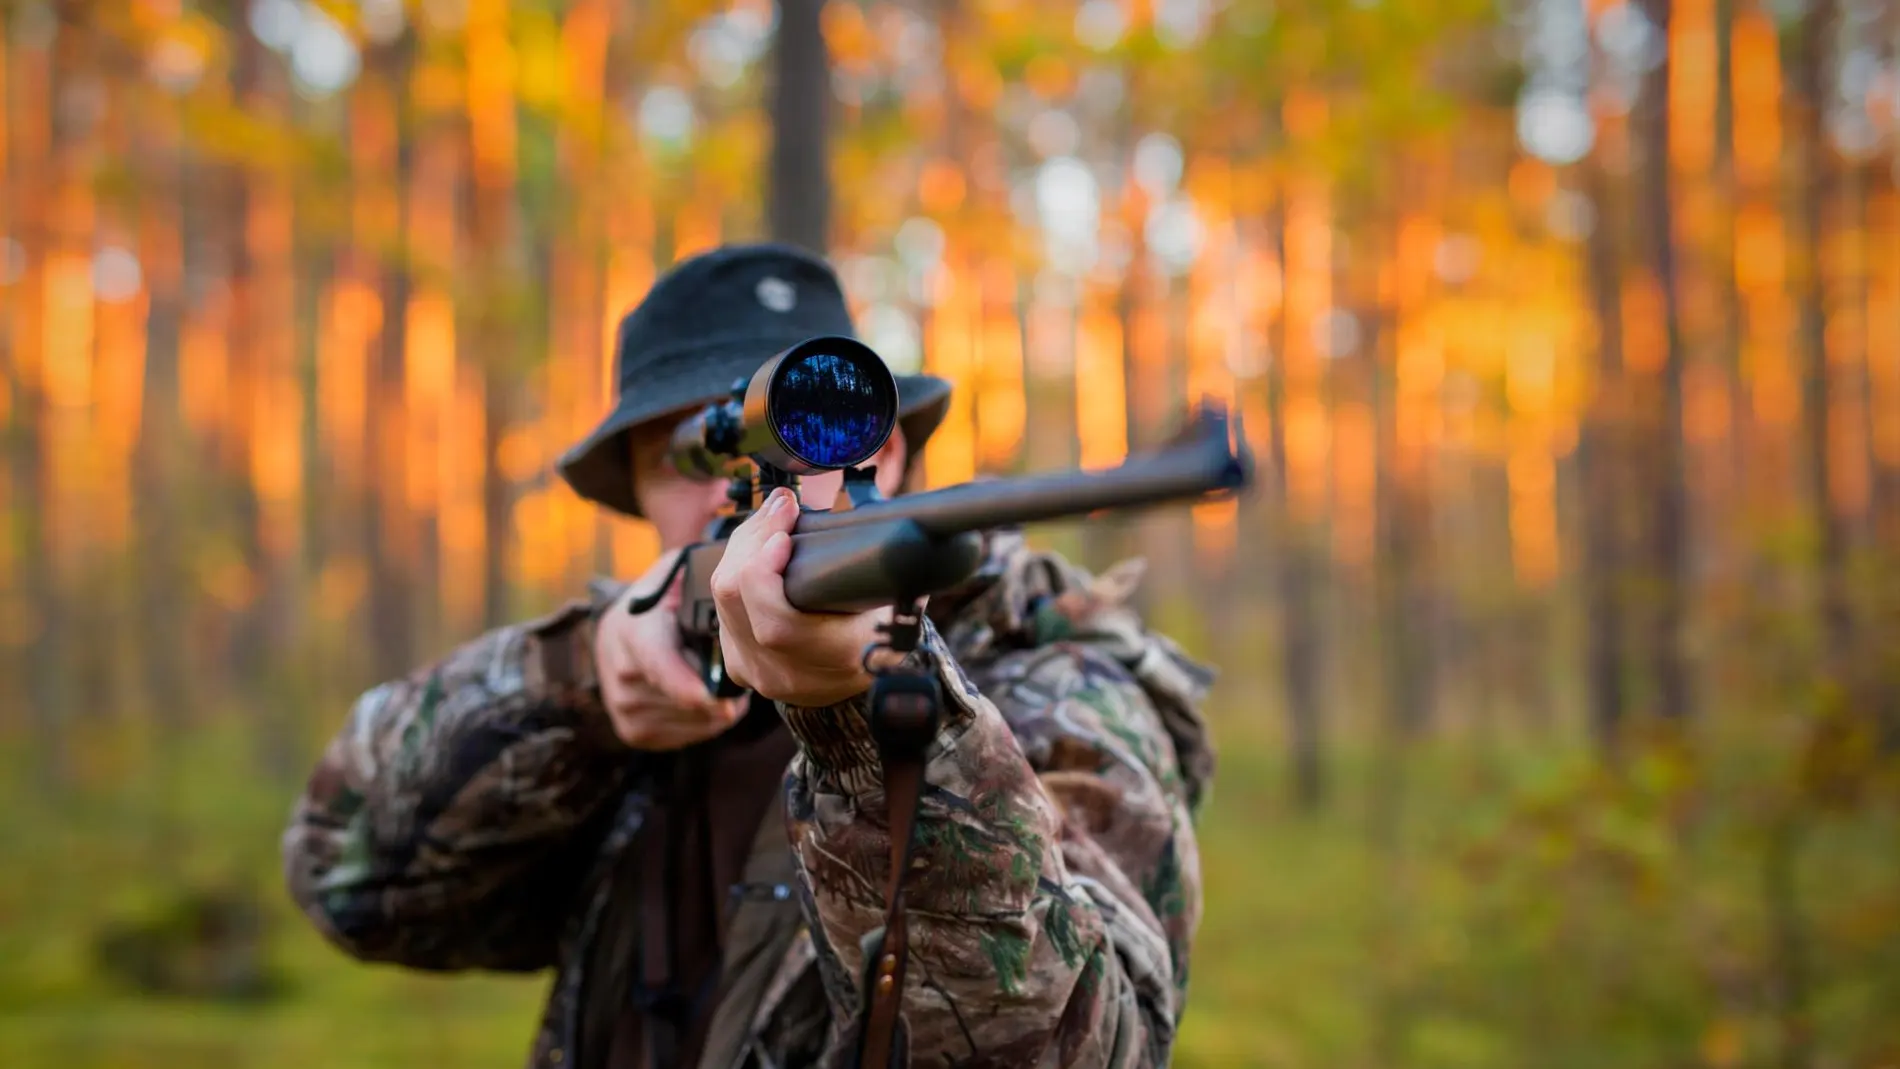 Cuchillo o navaja, ¿qué es mejor para salir de caza?, ¿qué dice la ley al  respecto?